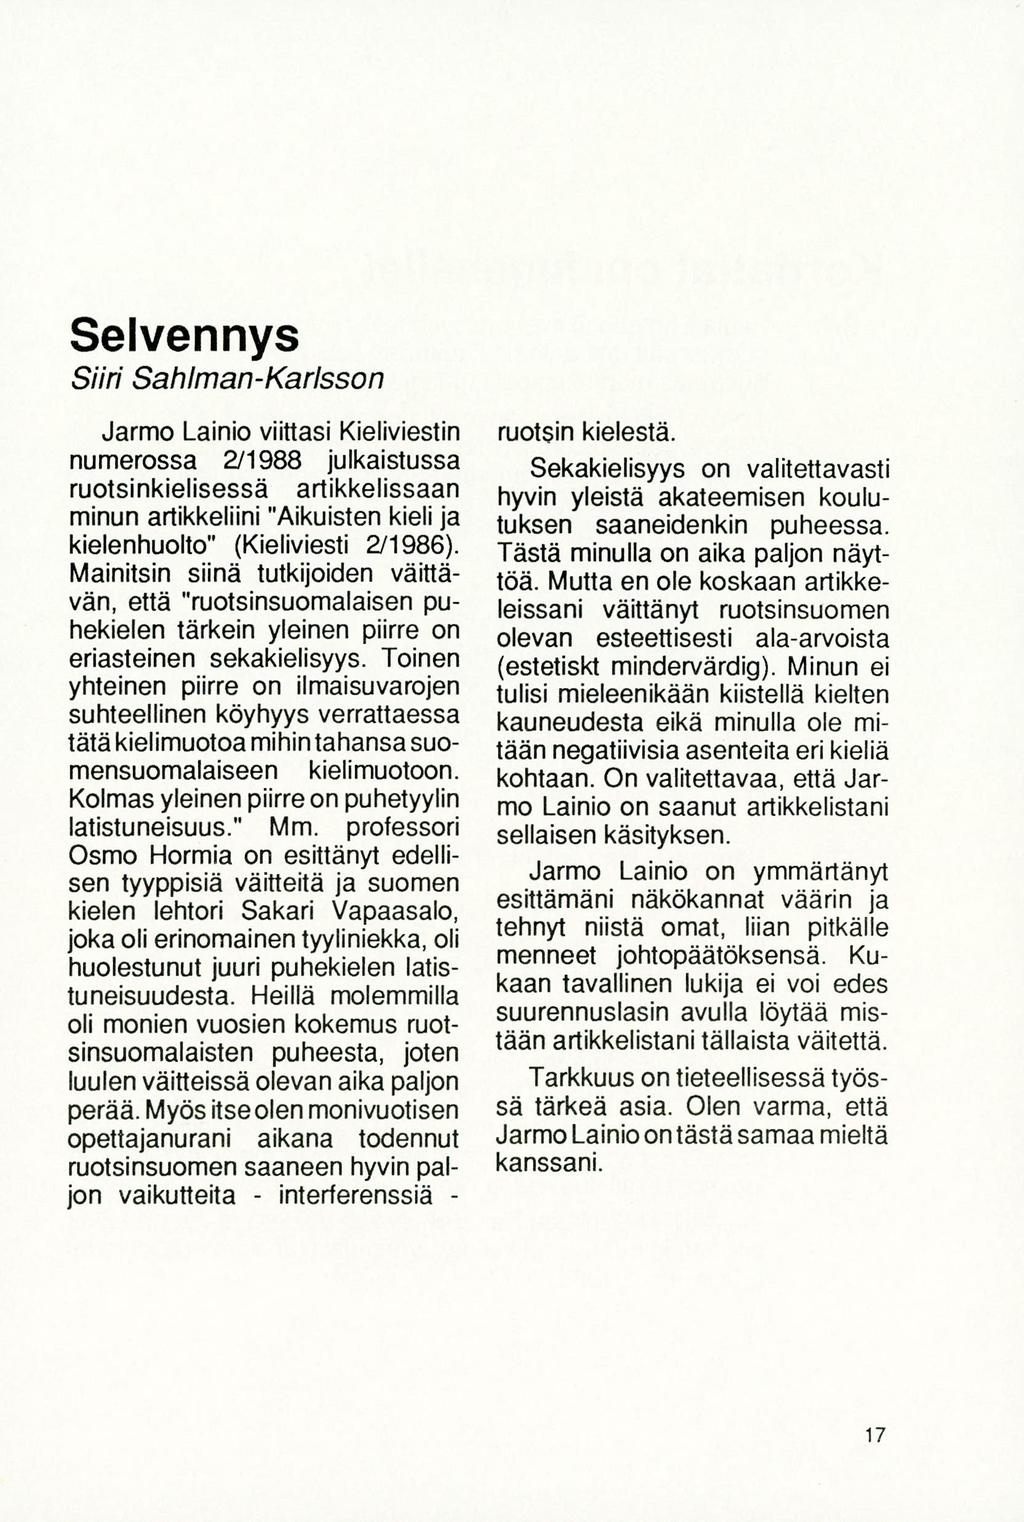 Selvennys Surt Sahiman-Karisson Jarmo Lainio viittasi Kieliviestin numerossa 211988 julkaistussa ruotsinkielisessä artikkelissaan minun artikkeliini "Aikuisten kieli ja kielenhuolto" (Kieliviesti